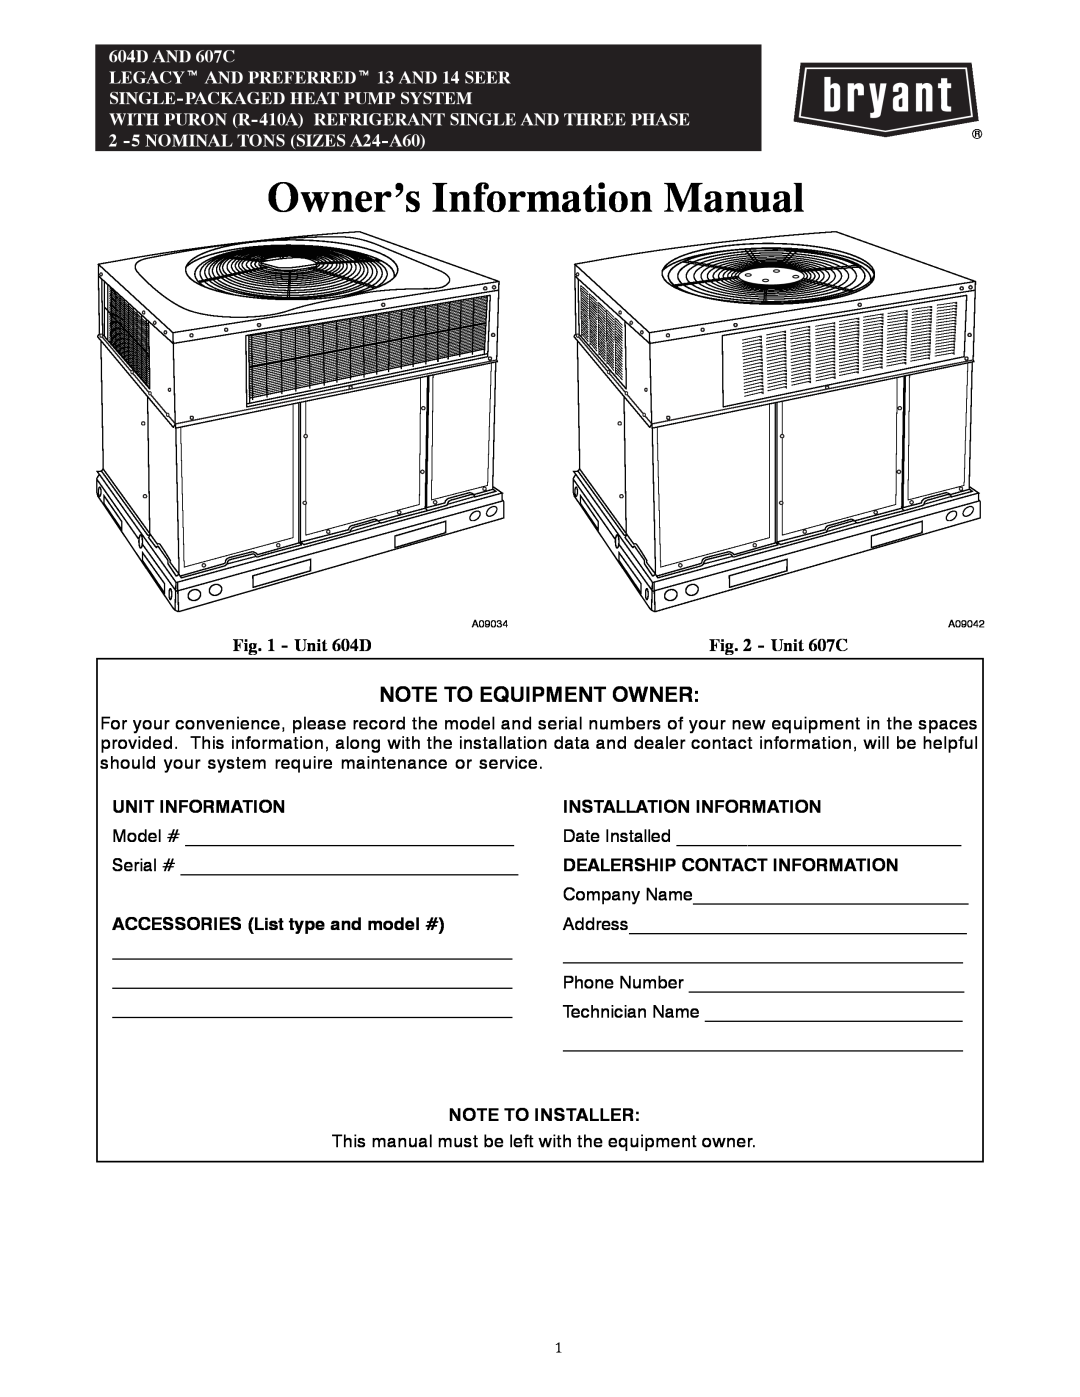 Bryant manual Unit 604D, Unit 607C, Owner’s Information Manual, Note To Equipment Owner, Unit Information 